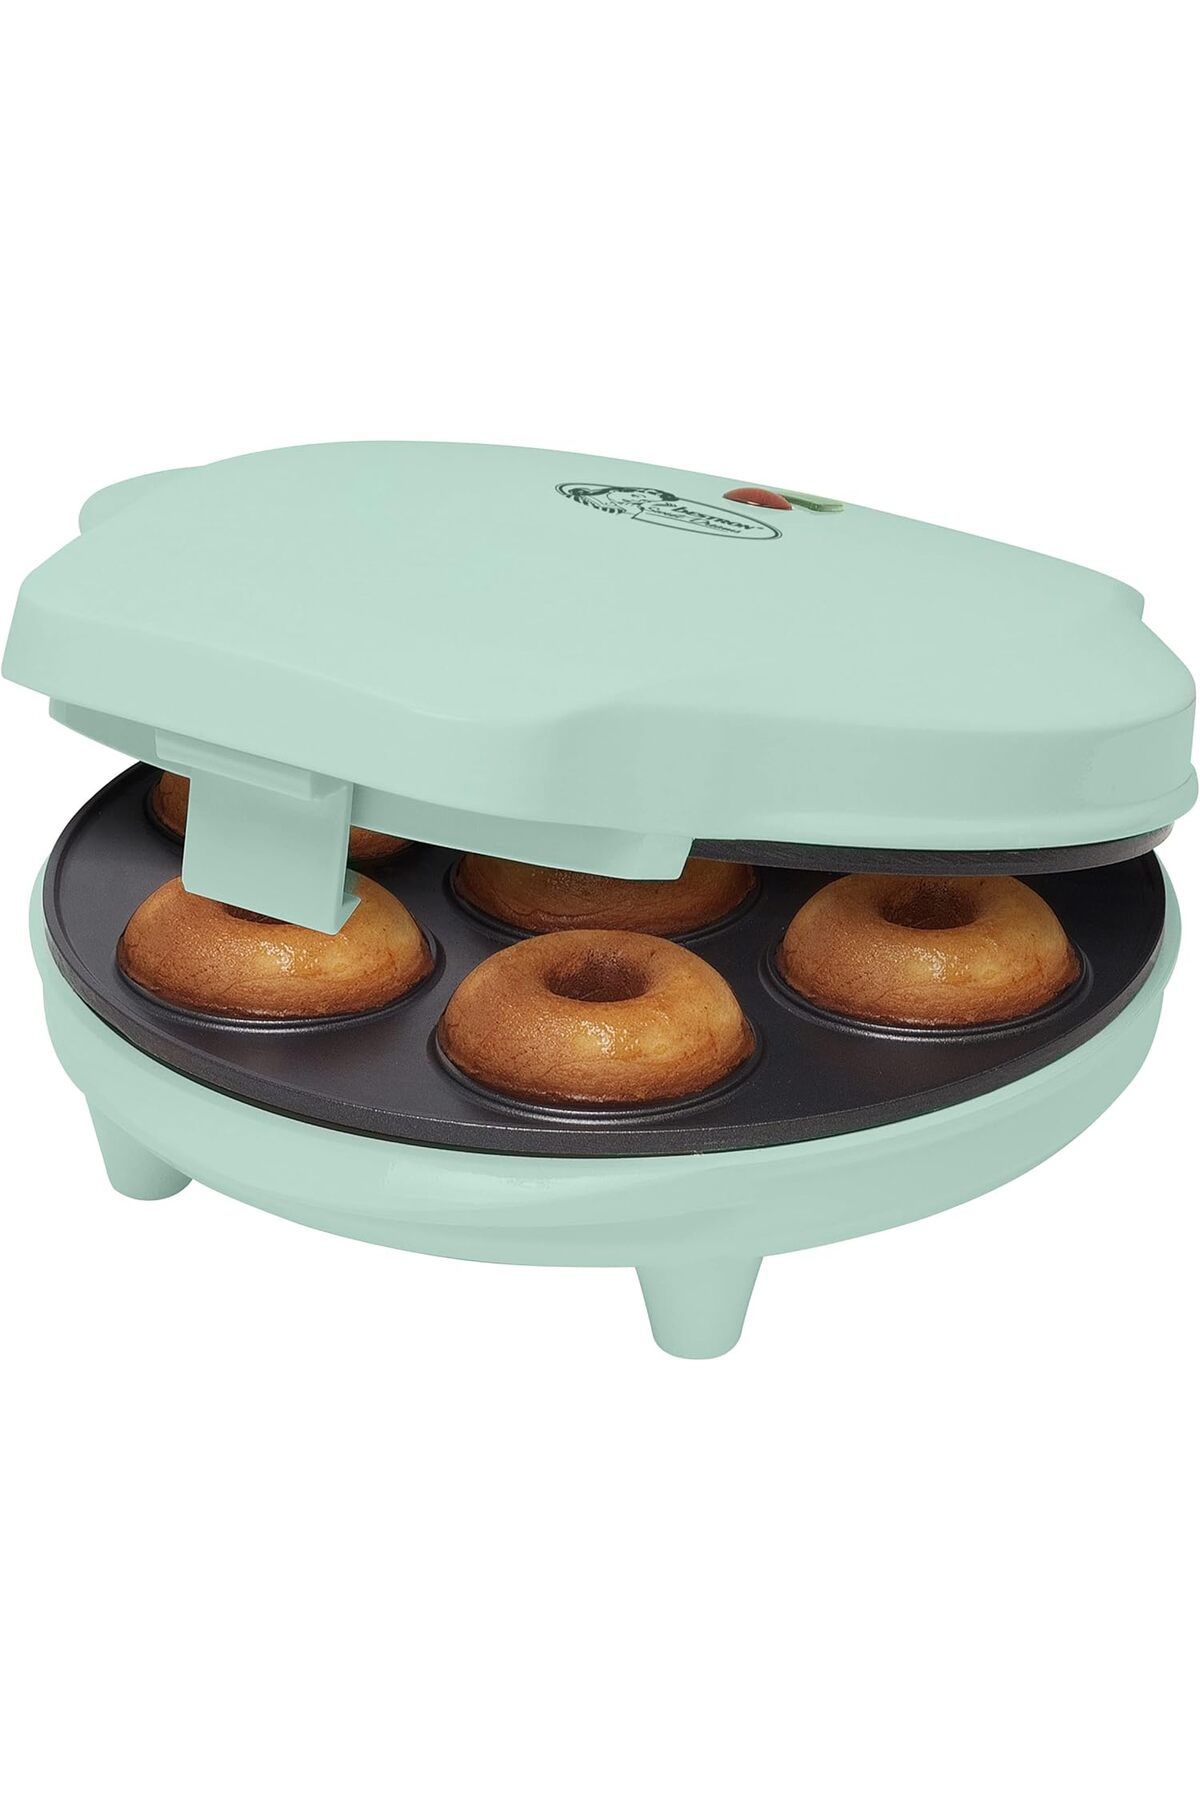 bestron Donut Makinesi, Retro Tasarımlı, Tatlı Rüyalar, Yapışmaz Kaplama, 700 Watt